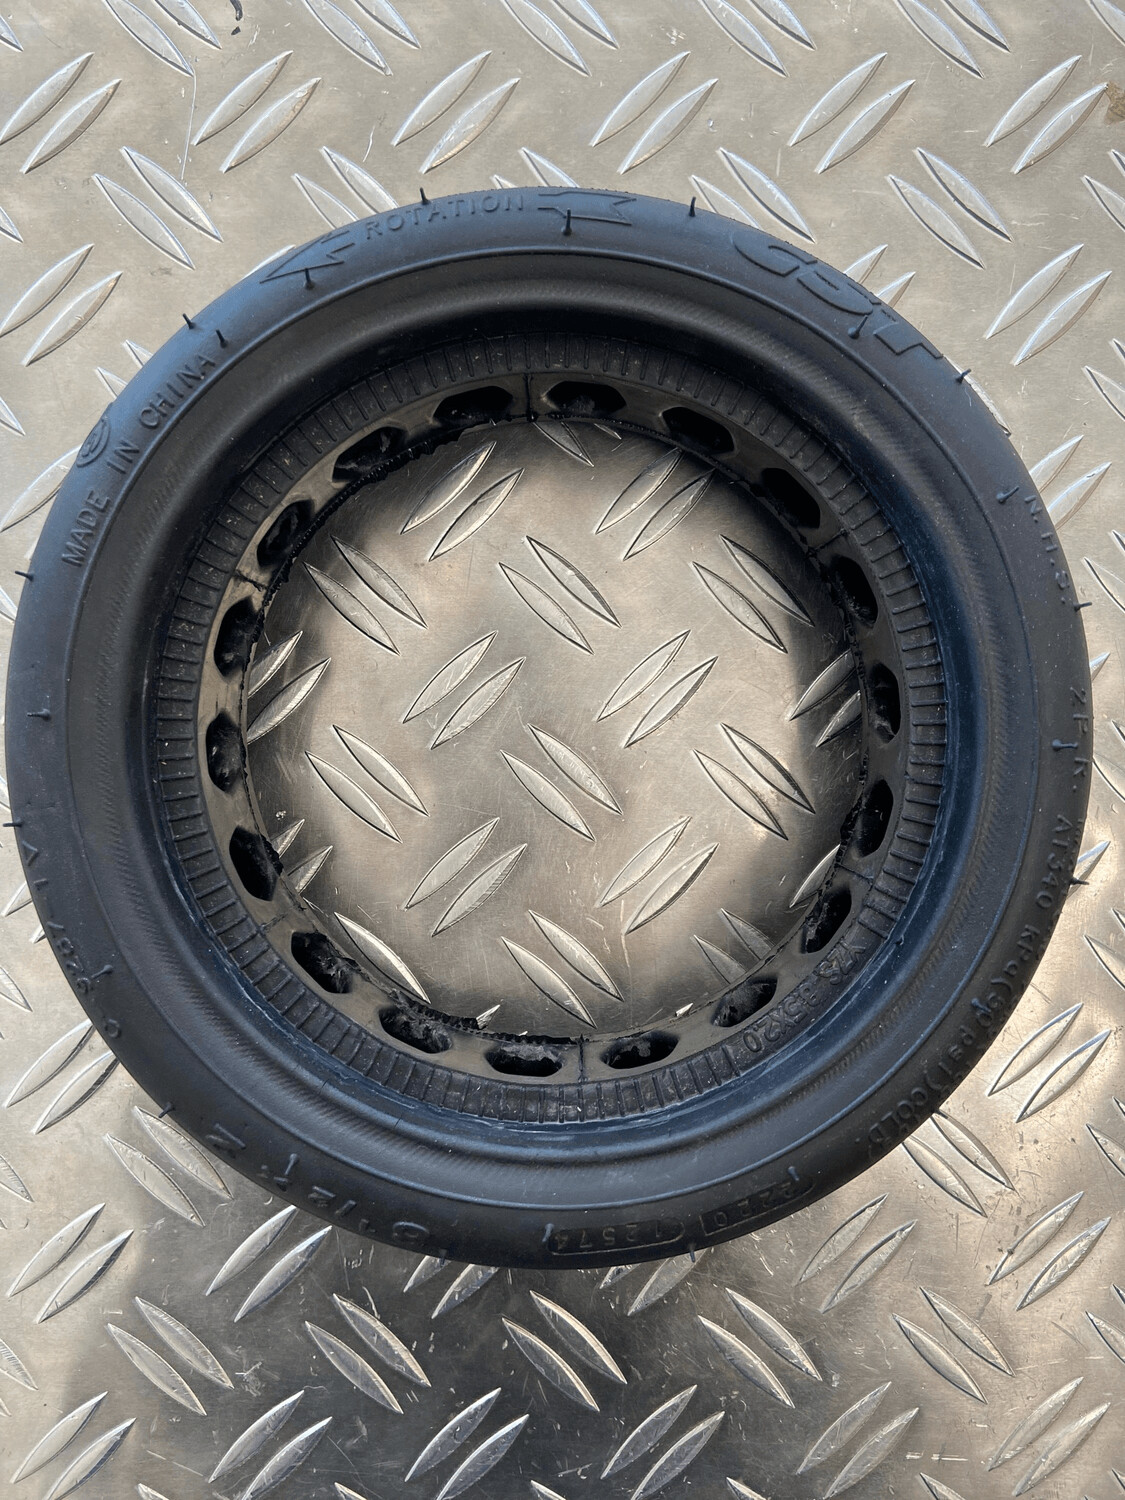 Montage pneu plein dualtron mini 